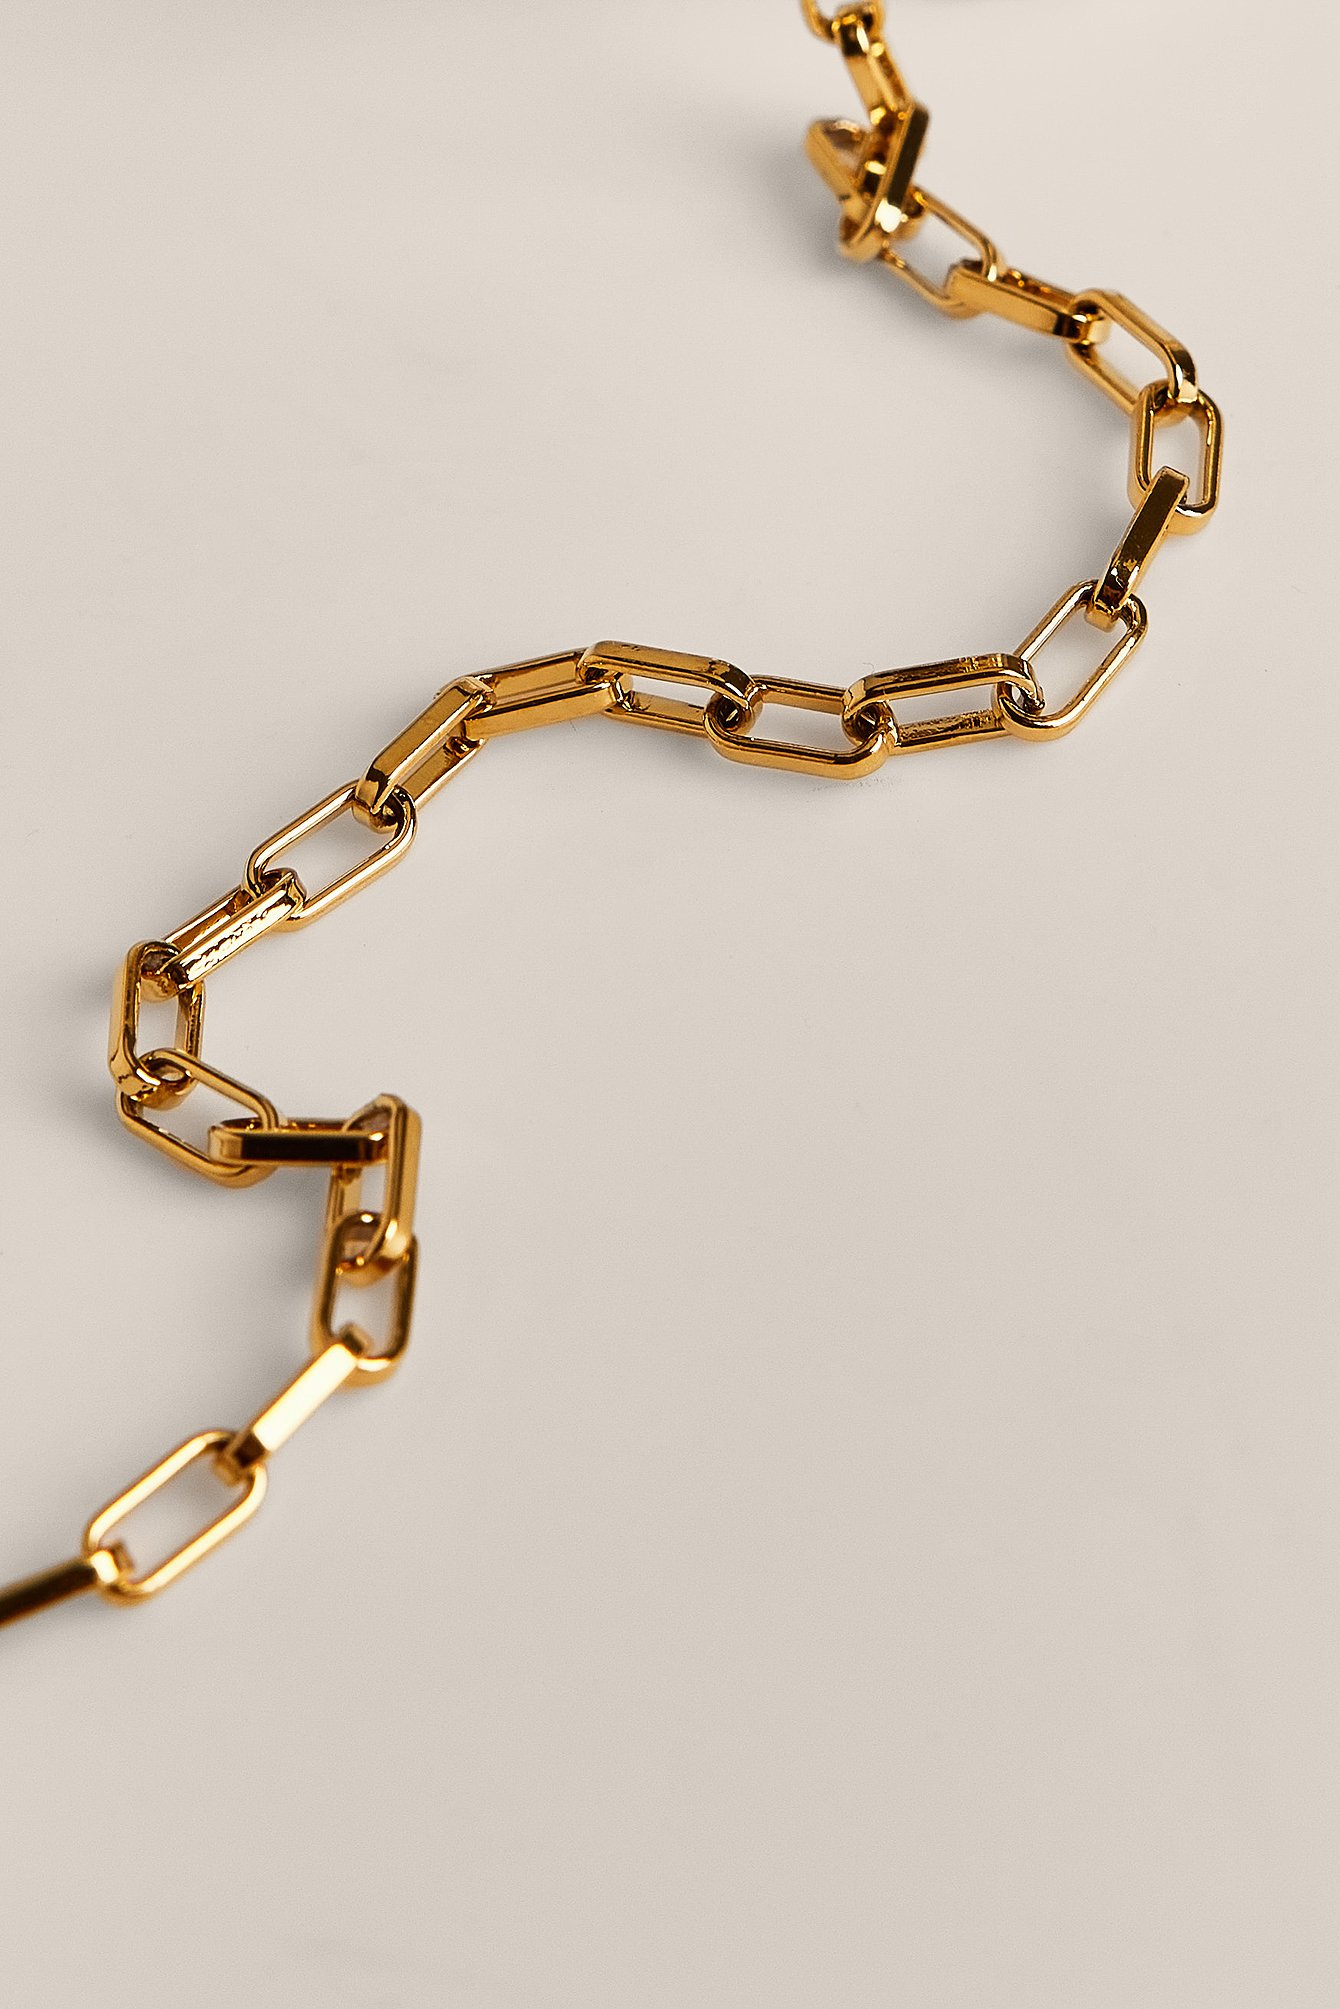 Gold Resirkulert gulbelagt halskjede med tynn lenke